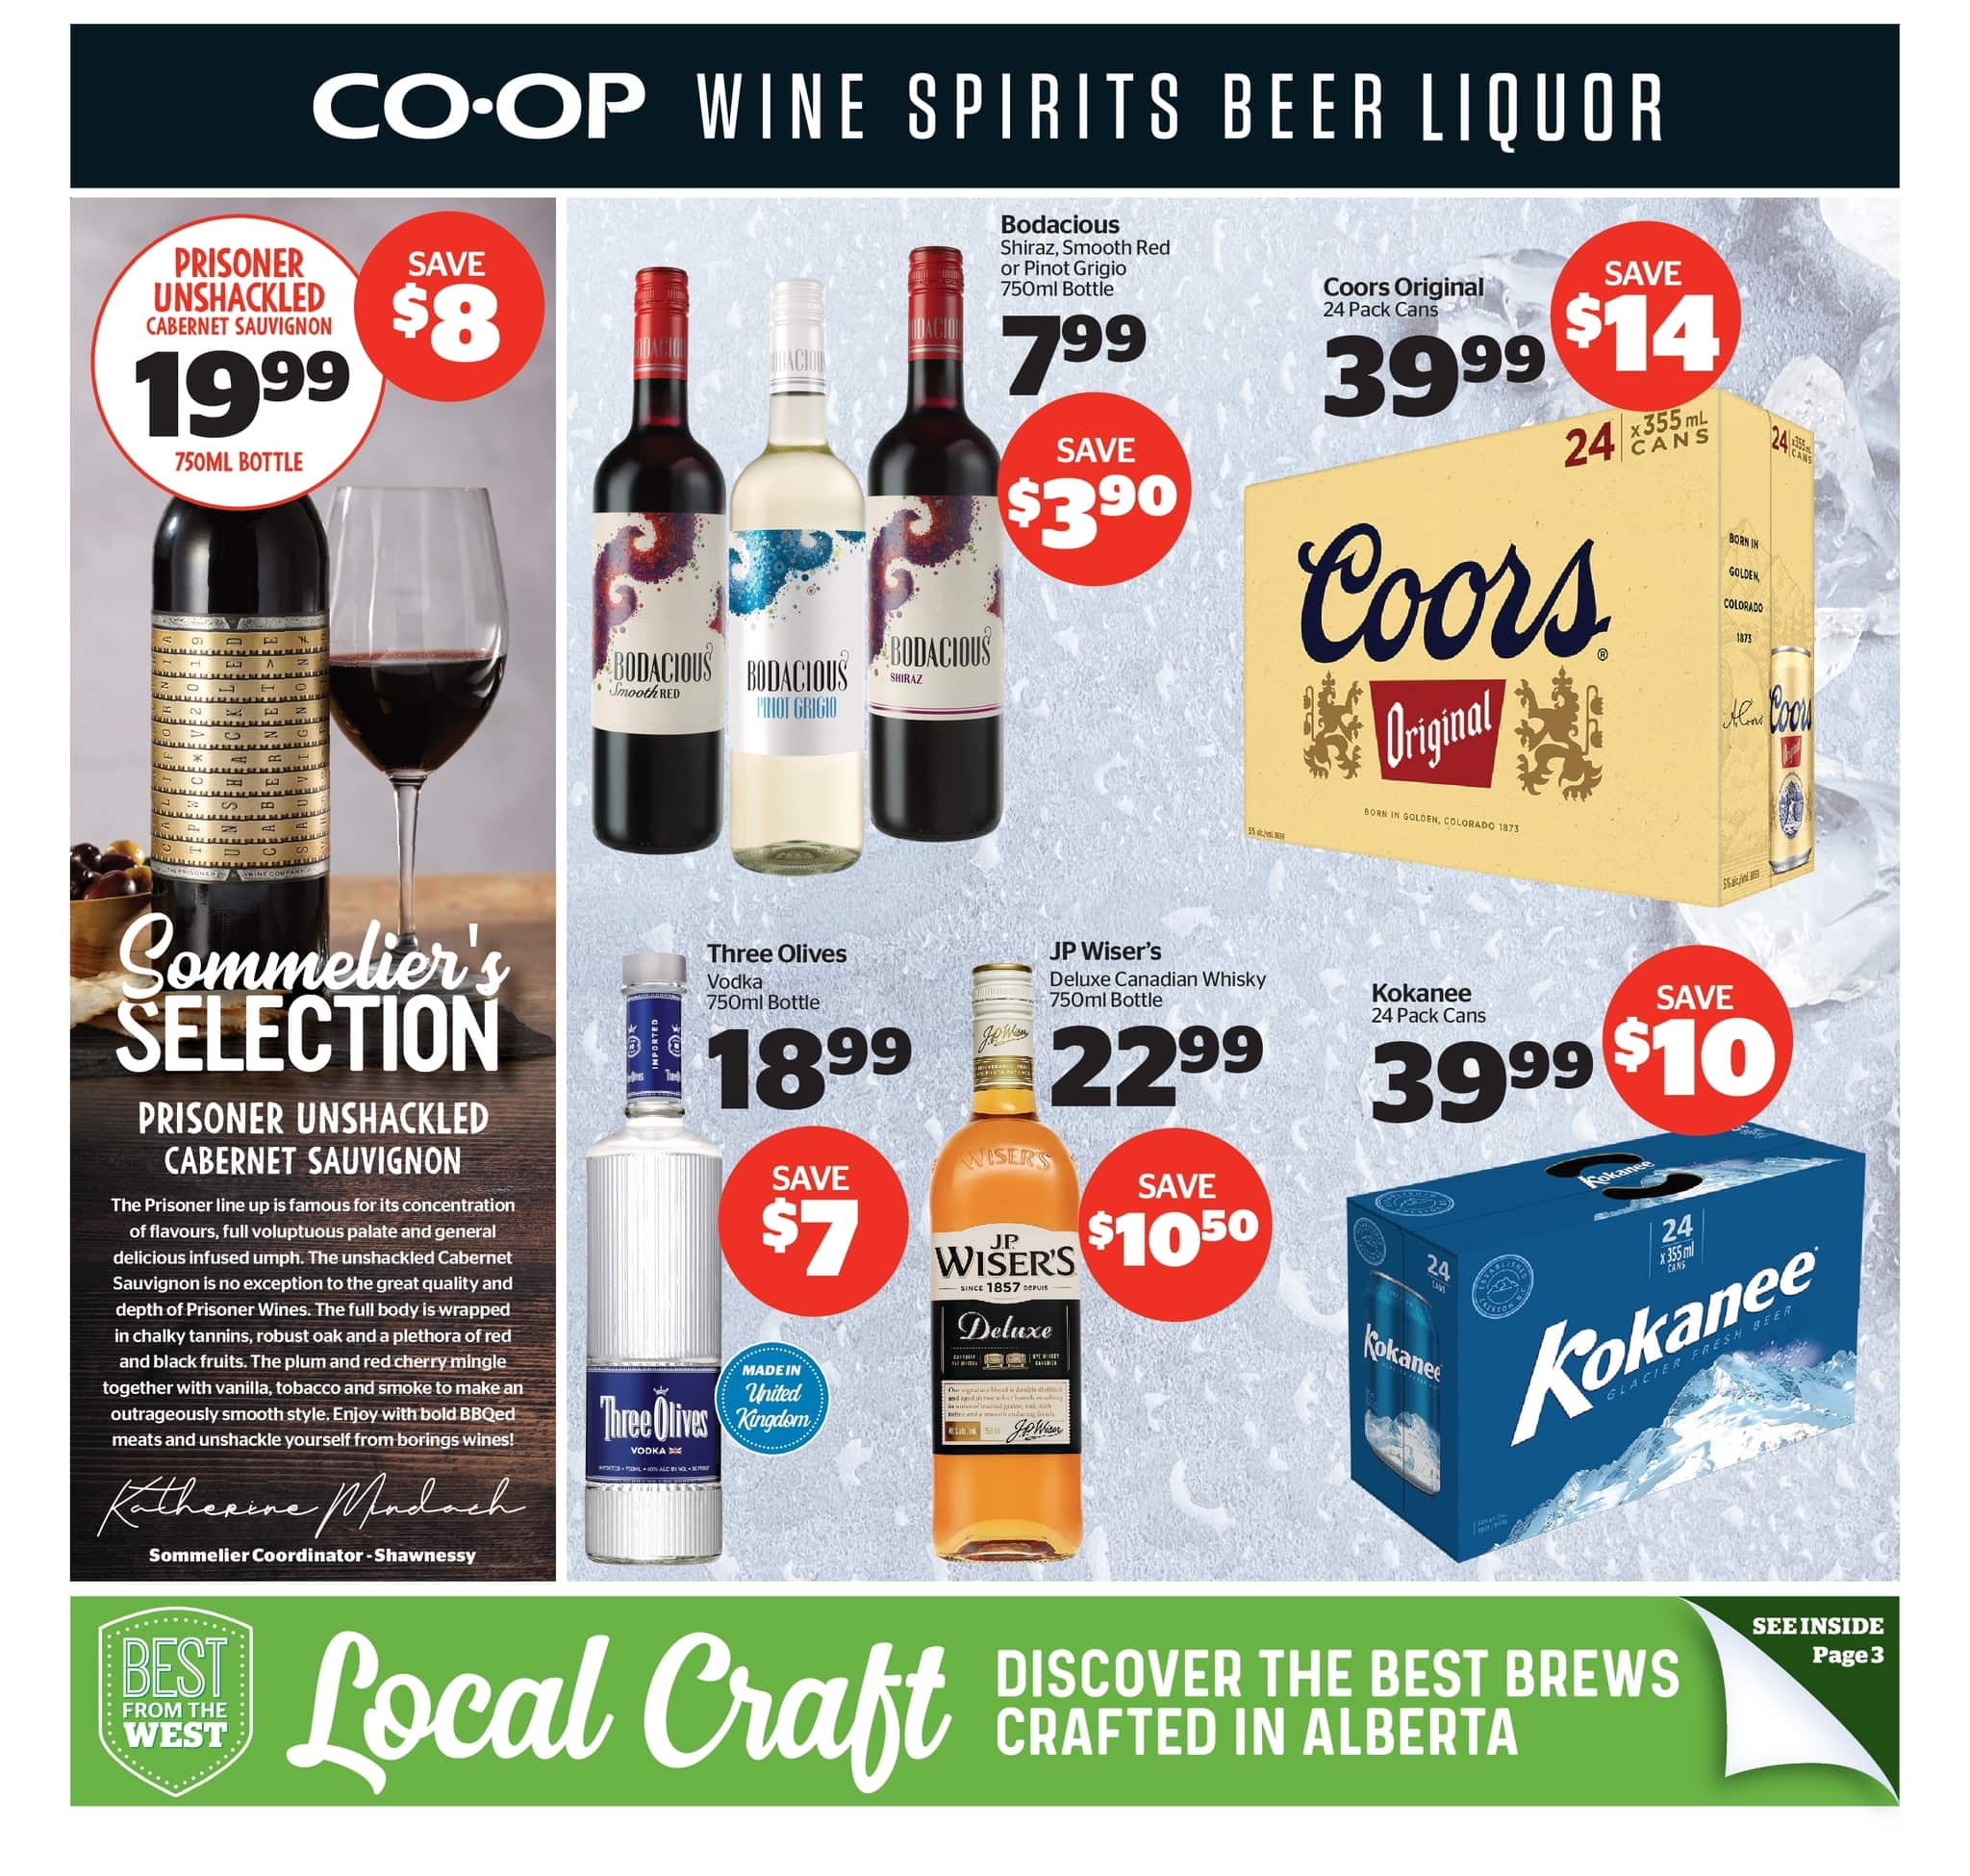 Calgary Co-op - Wine Spirits Beer